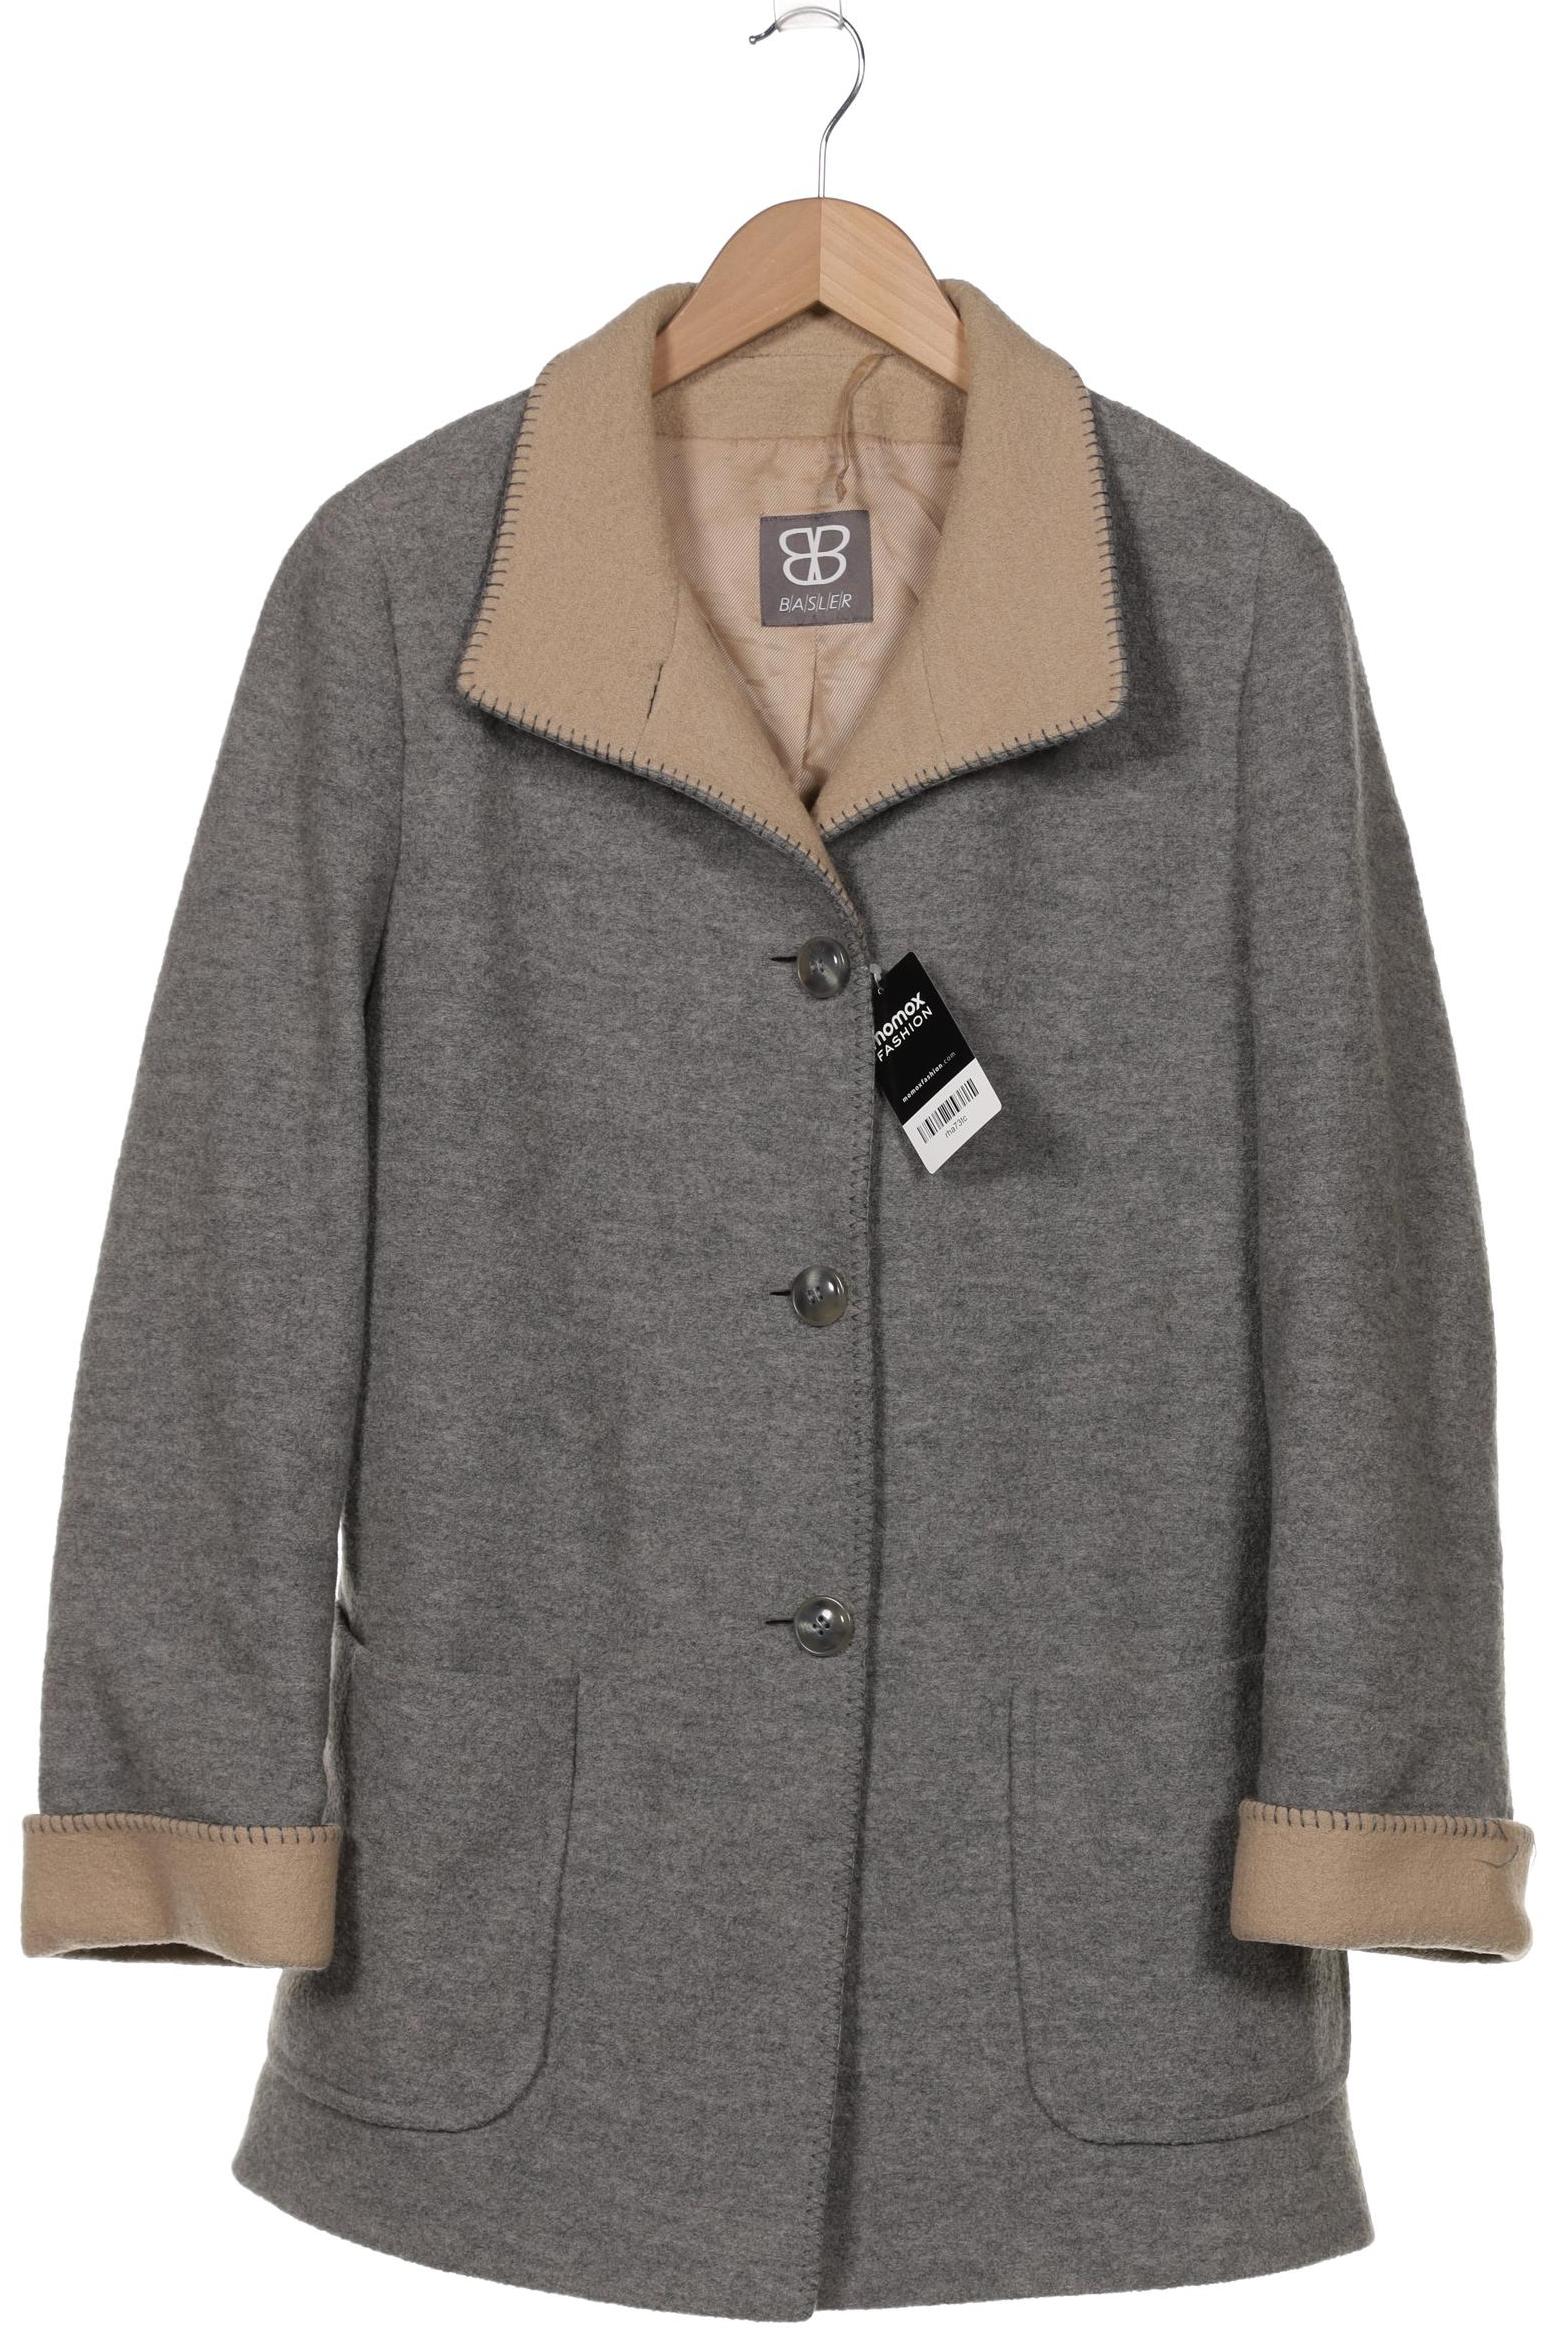 Basler Damen Mantel, grau, Gr. 40 von Basler